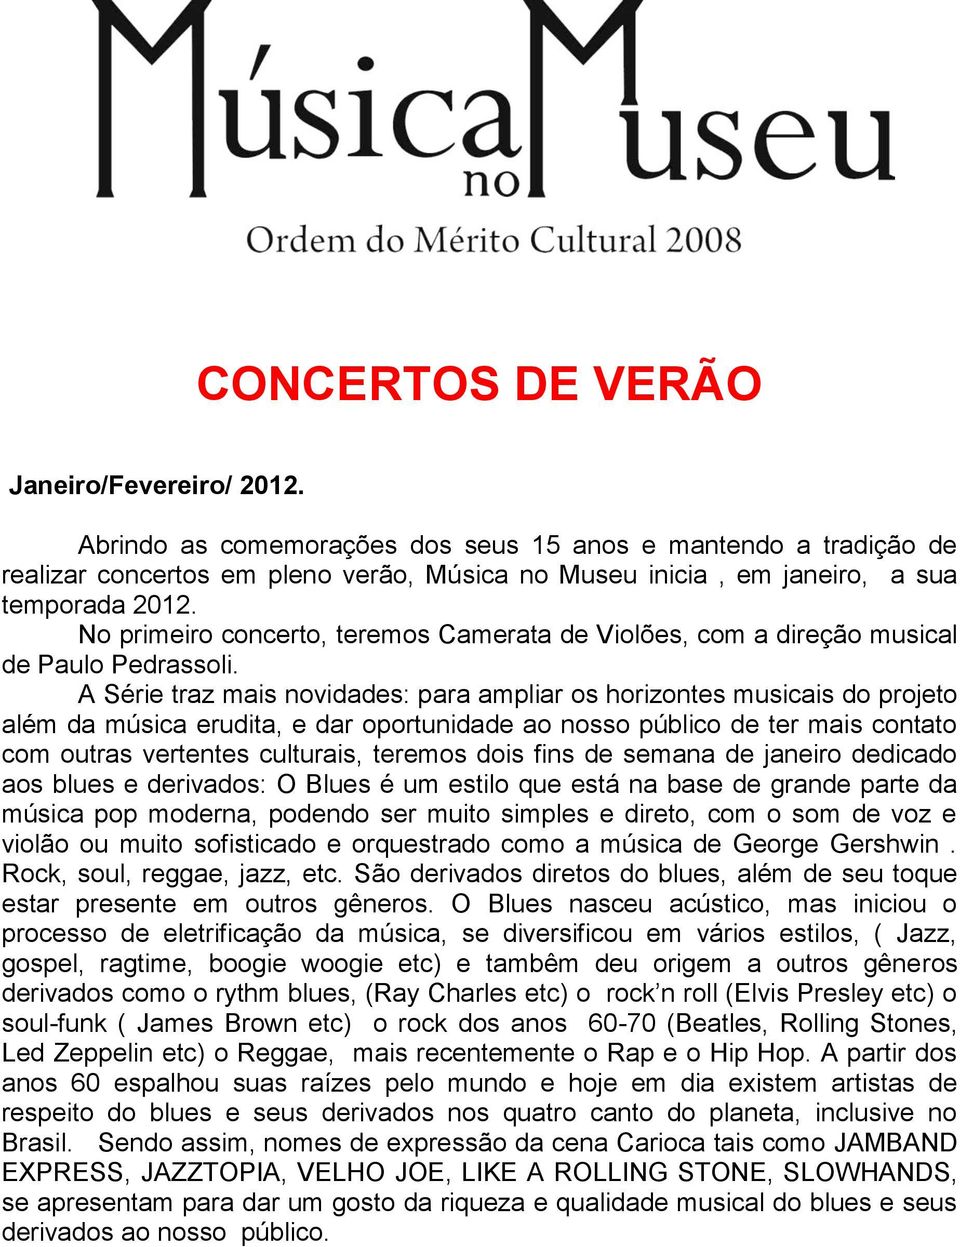 No primeiro concerto, teremos Camerata de Violões, com a direção musical de Paulo Pedrassoli.